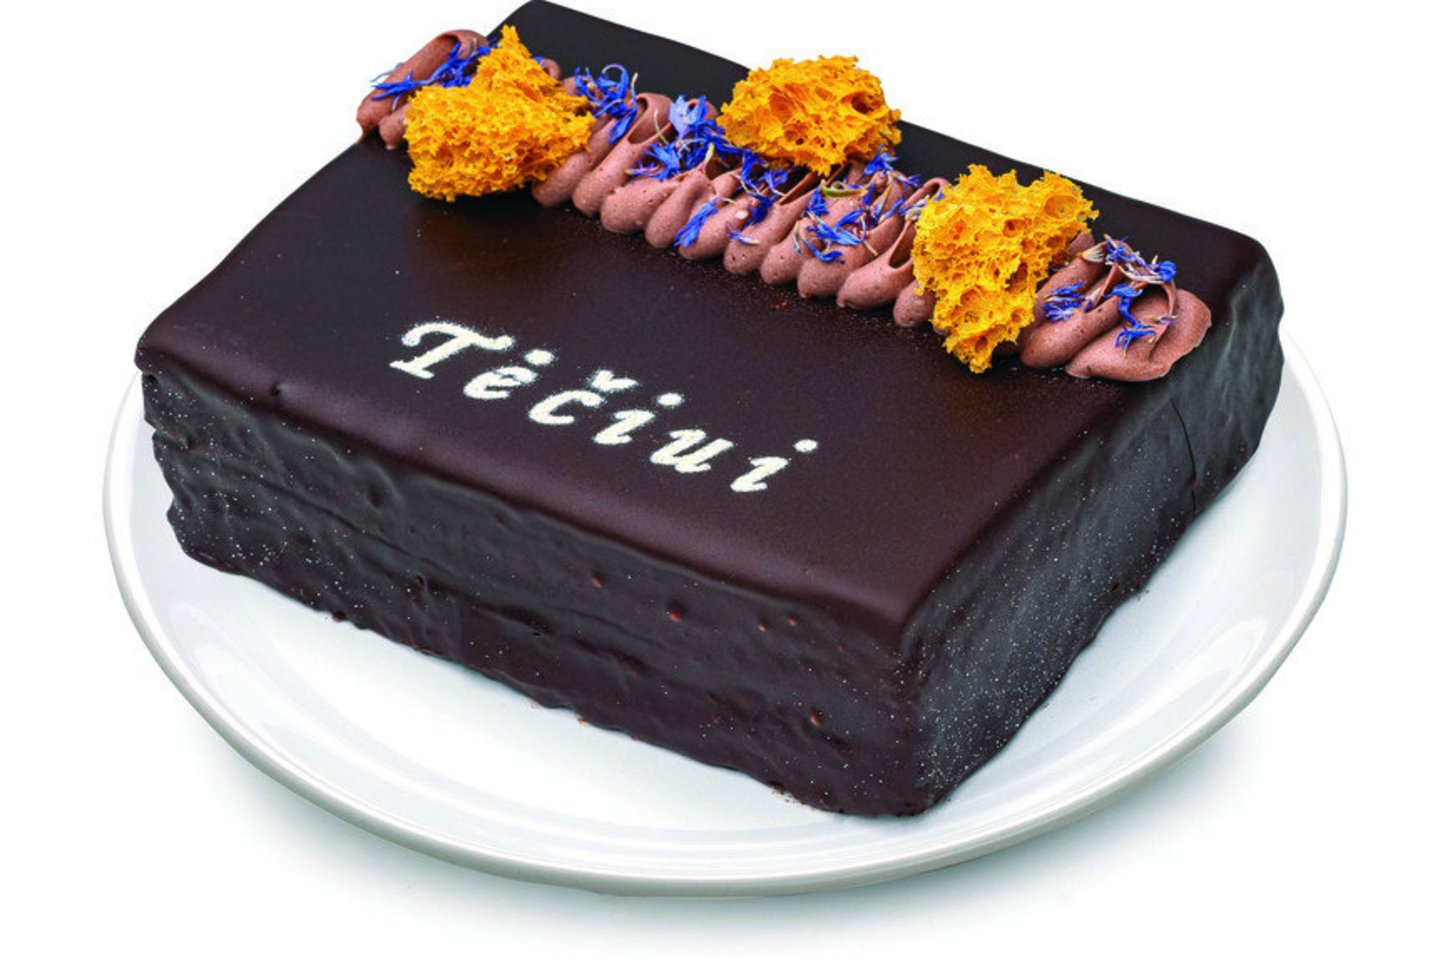 Riboto leidimo „Iki“ torte dominuoja sodraus, prabangaus šokoladinio kremo, pagaminto iš juodojo šokolado ir šviežios grietinėlės, skonis.